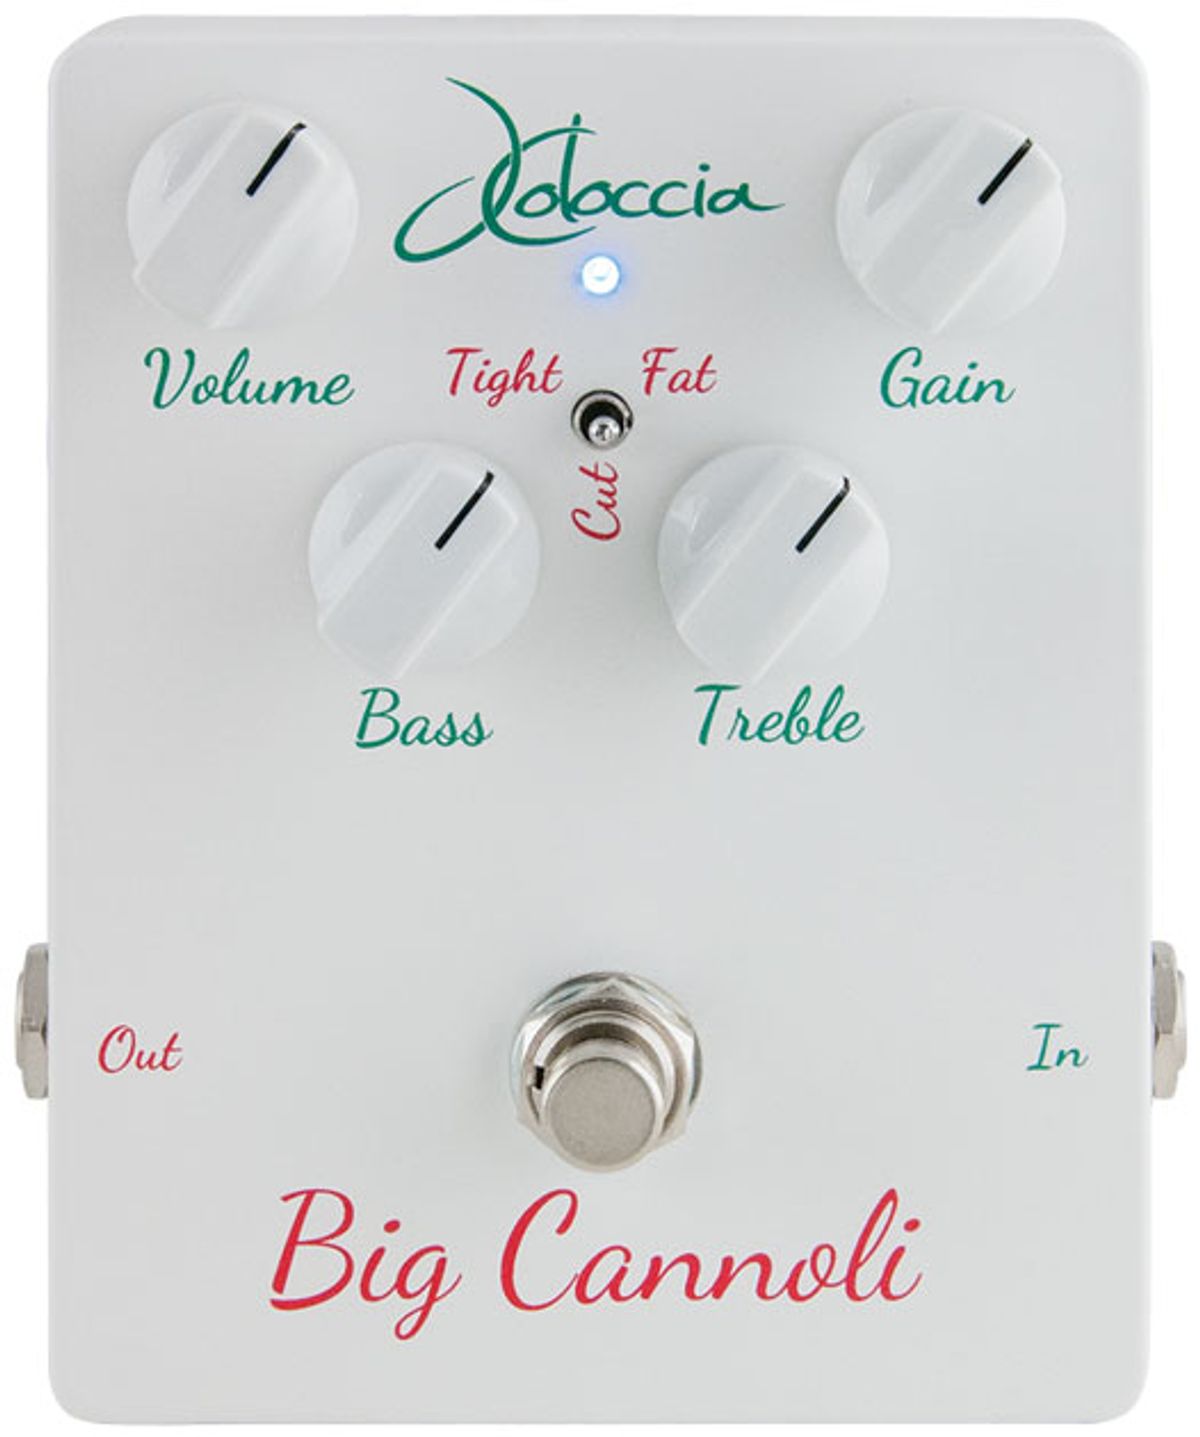 JColoccia Big Cannoli Overdrive Review